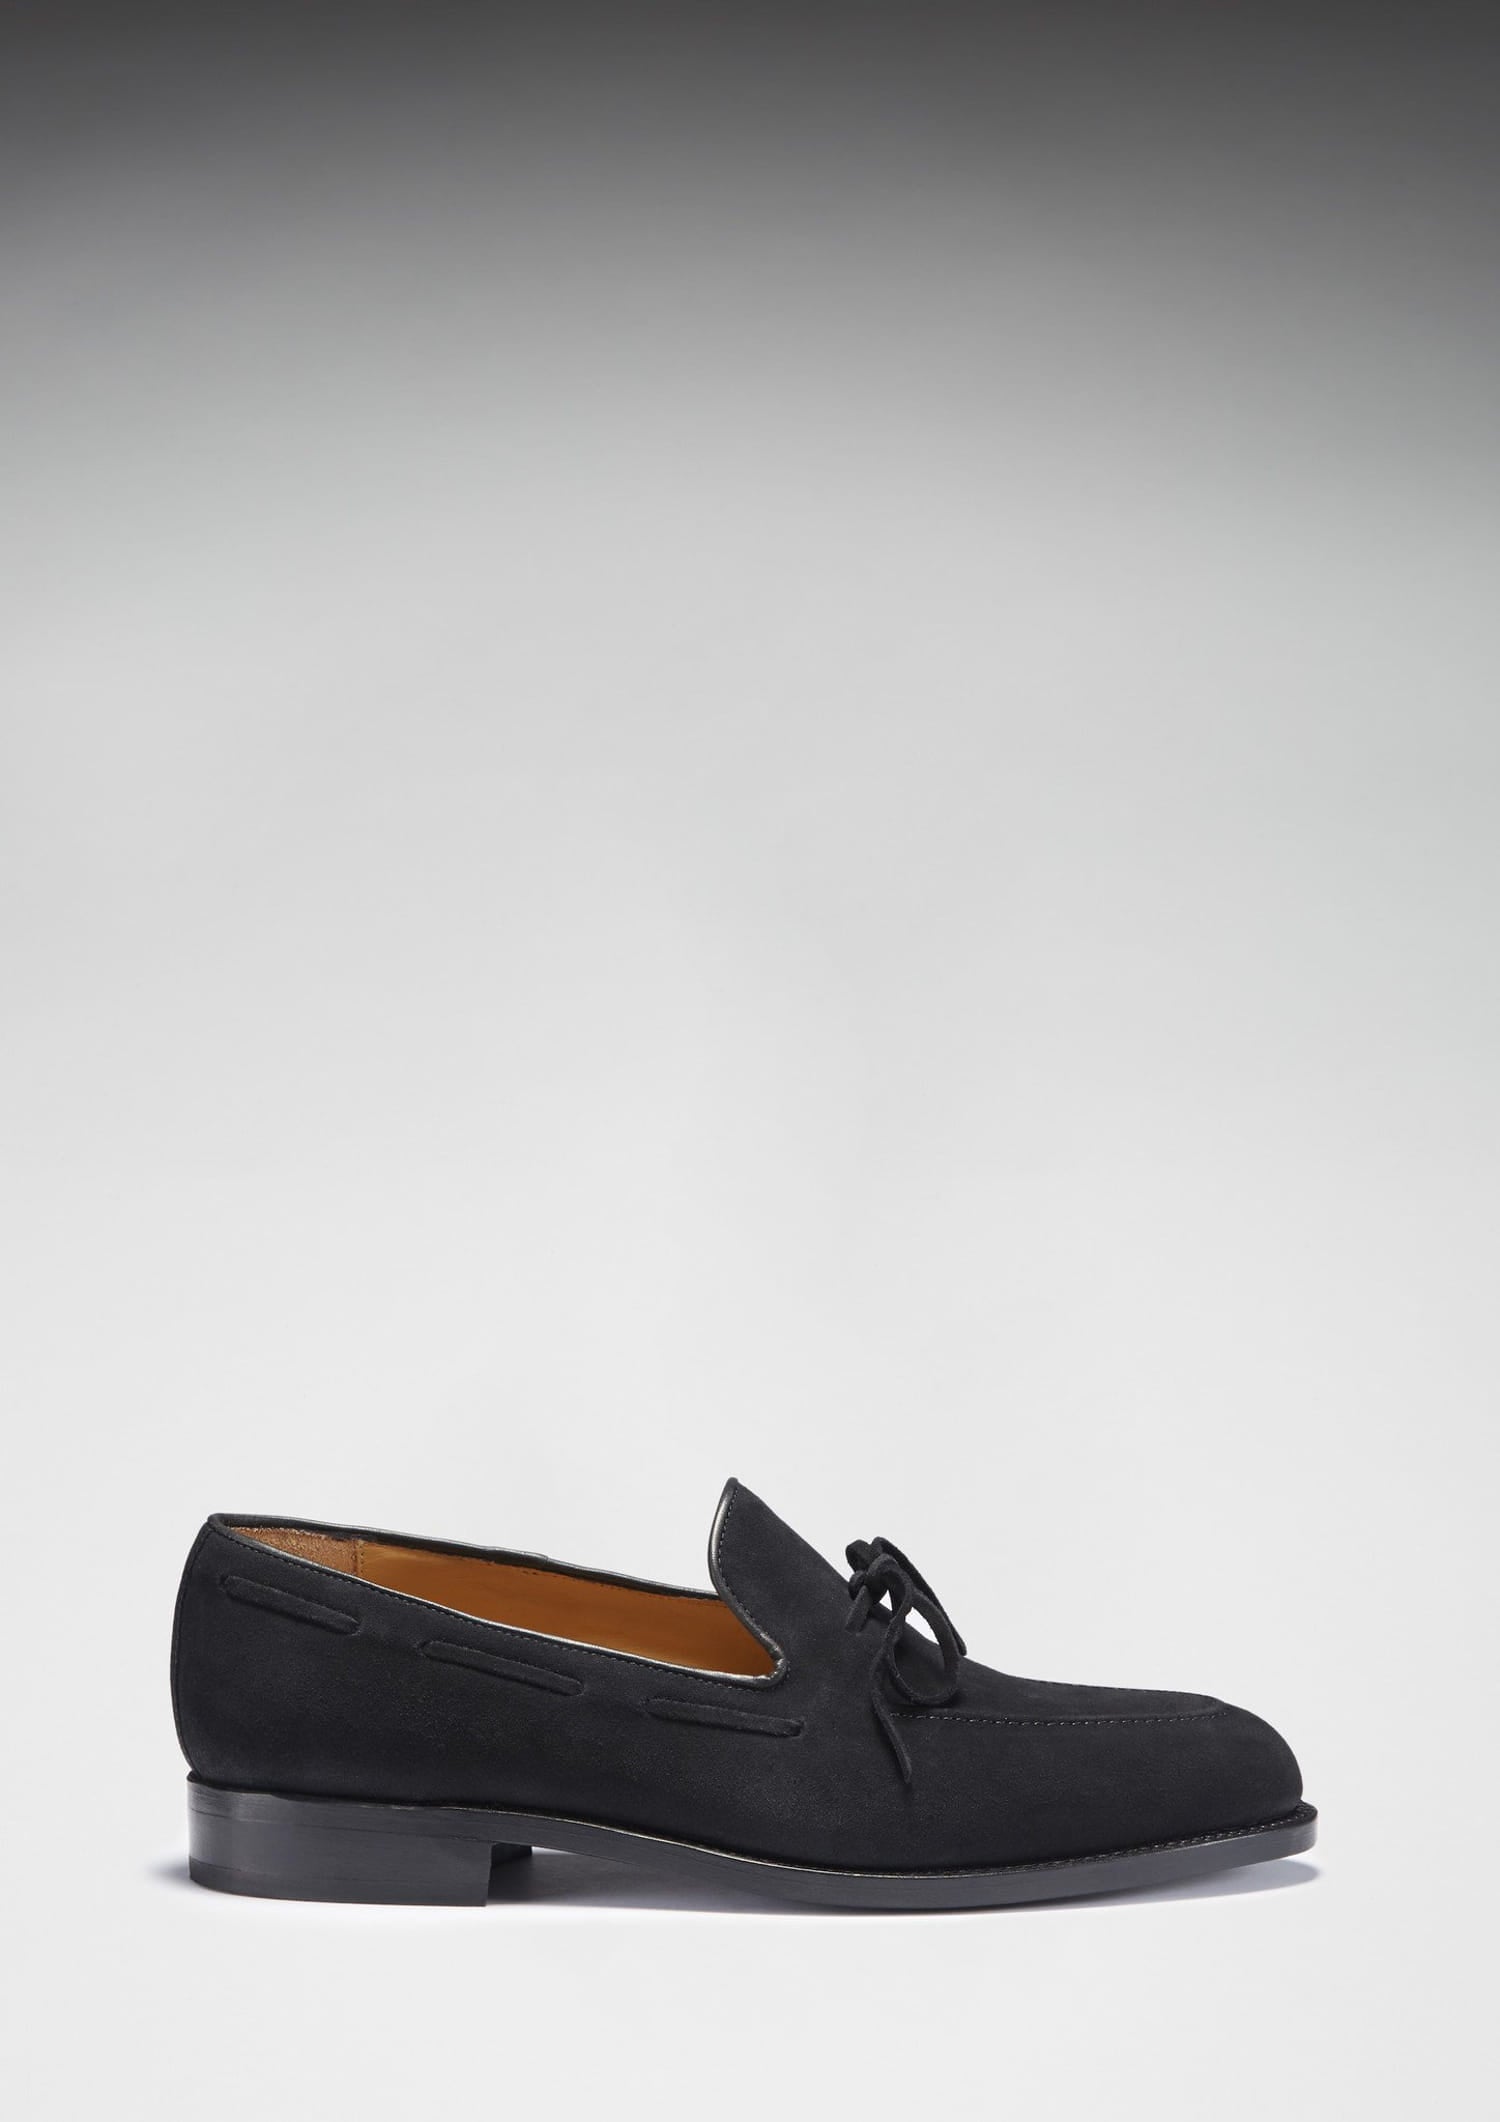 Loafer aus schwarzem Wildleder mit Schnürung, rahmengenähte Ledersohle